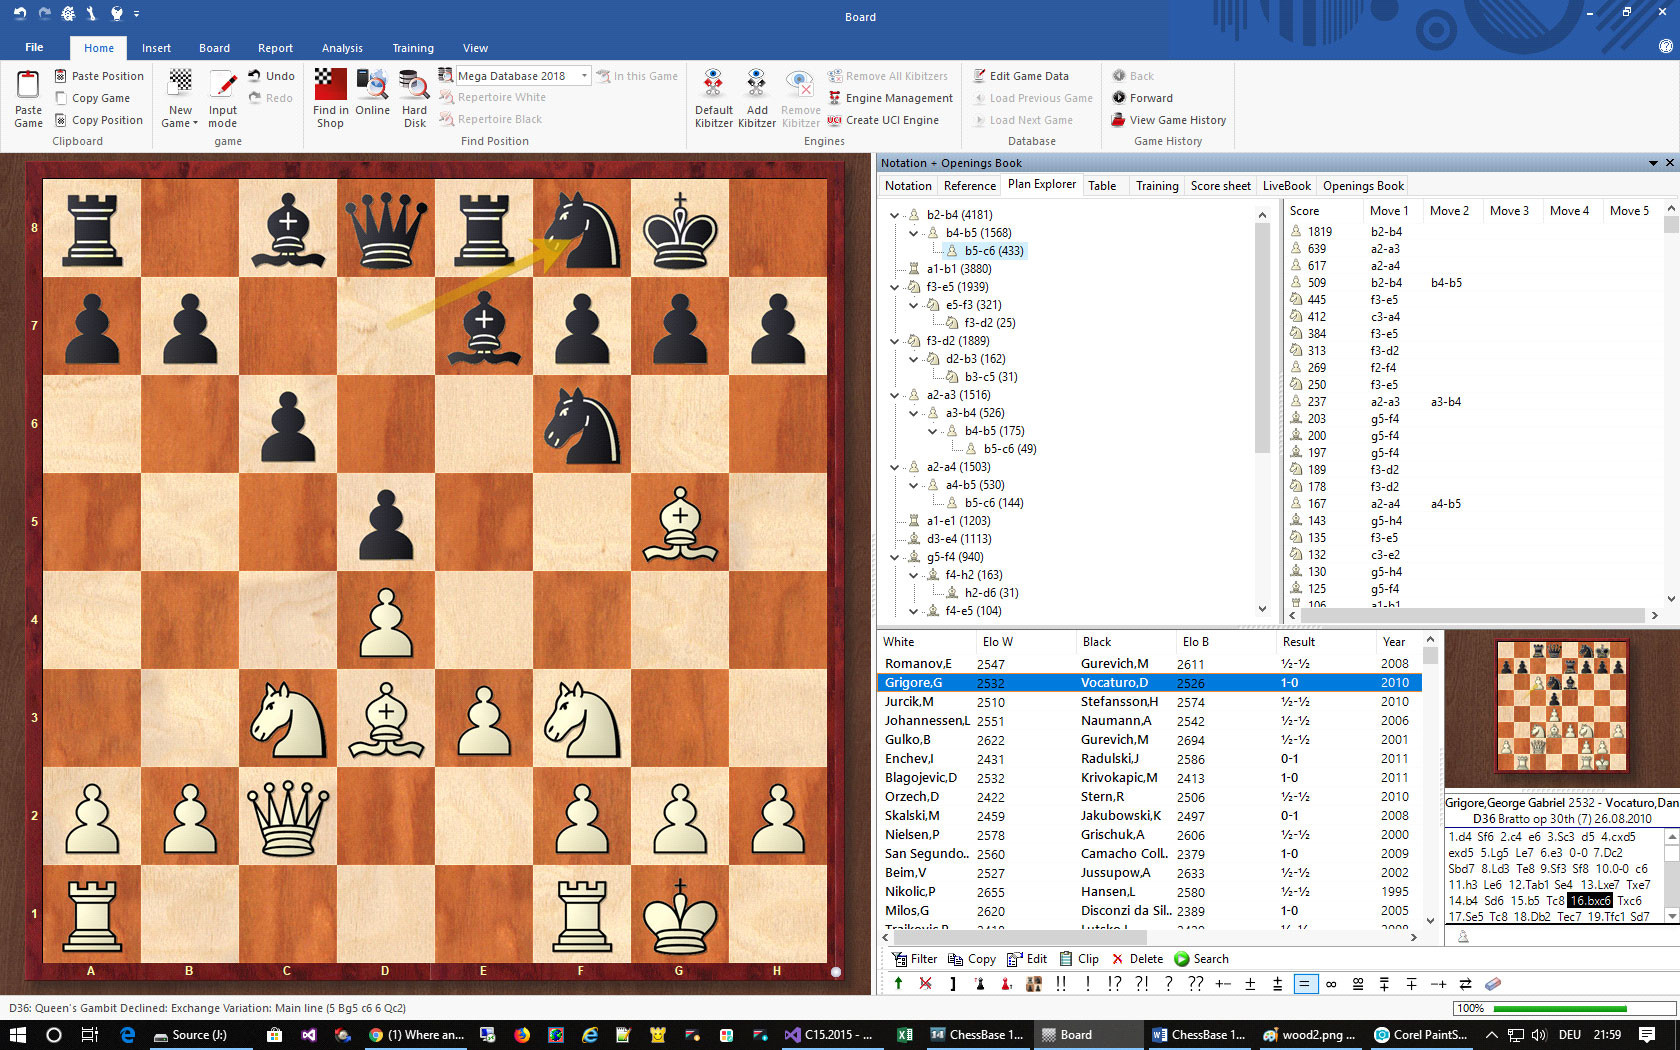 ChessBase 15 Steam Edition screenshot